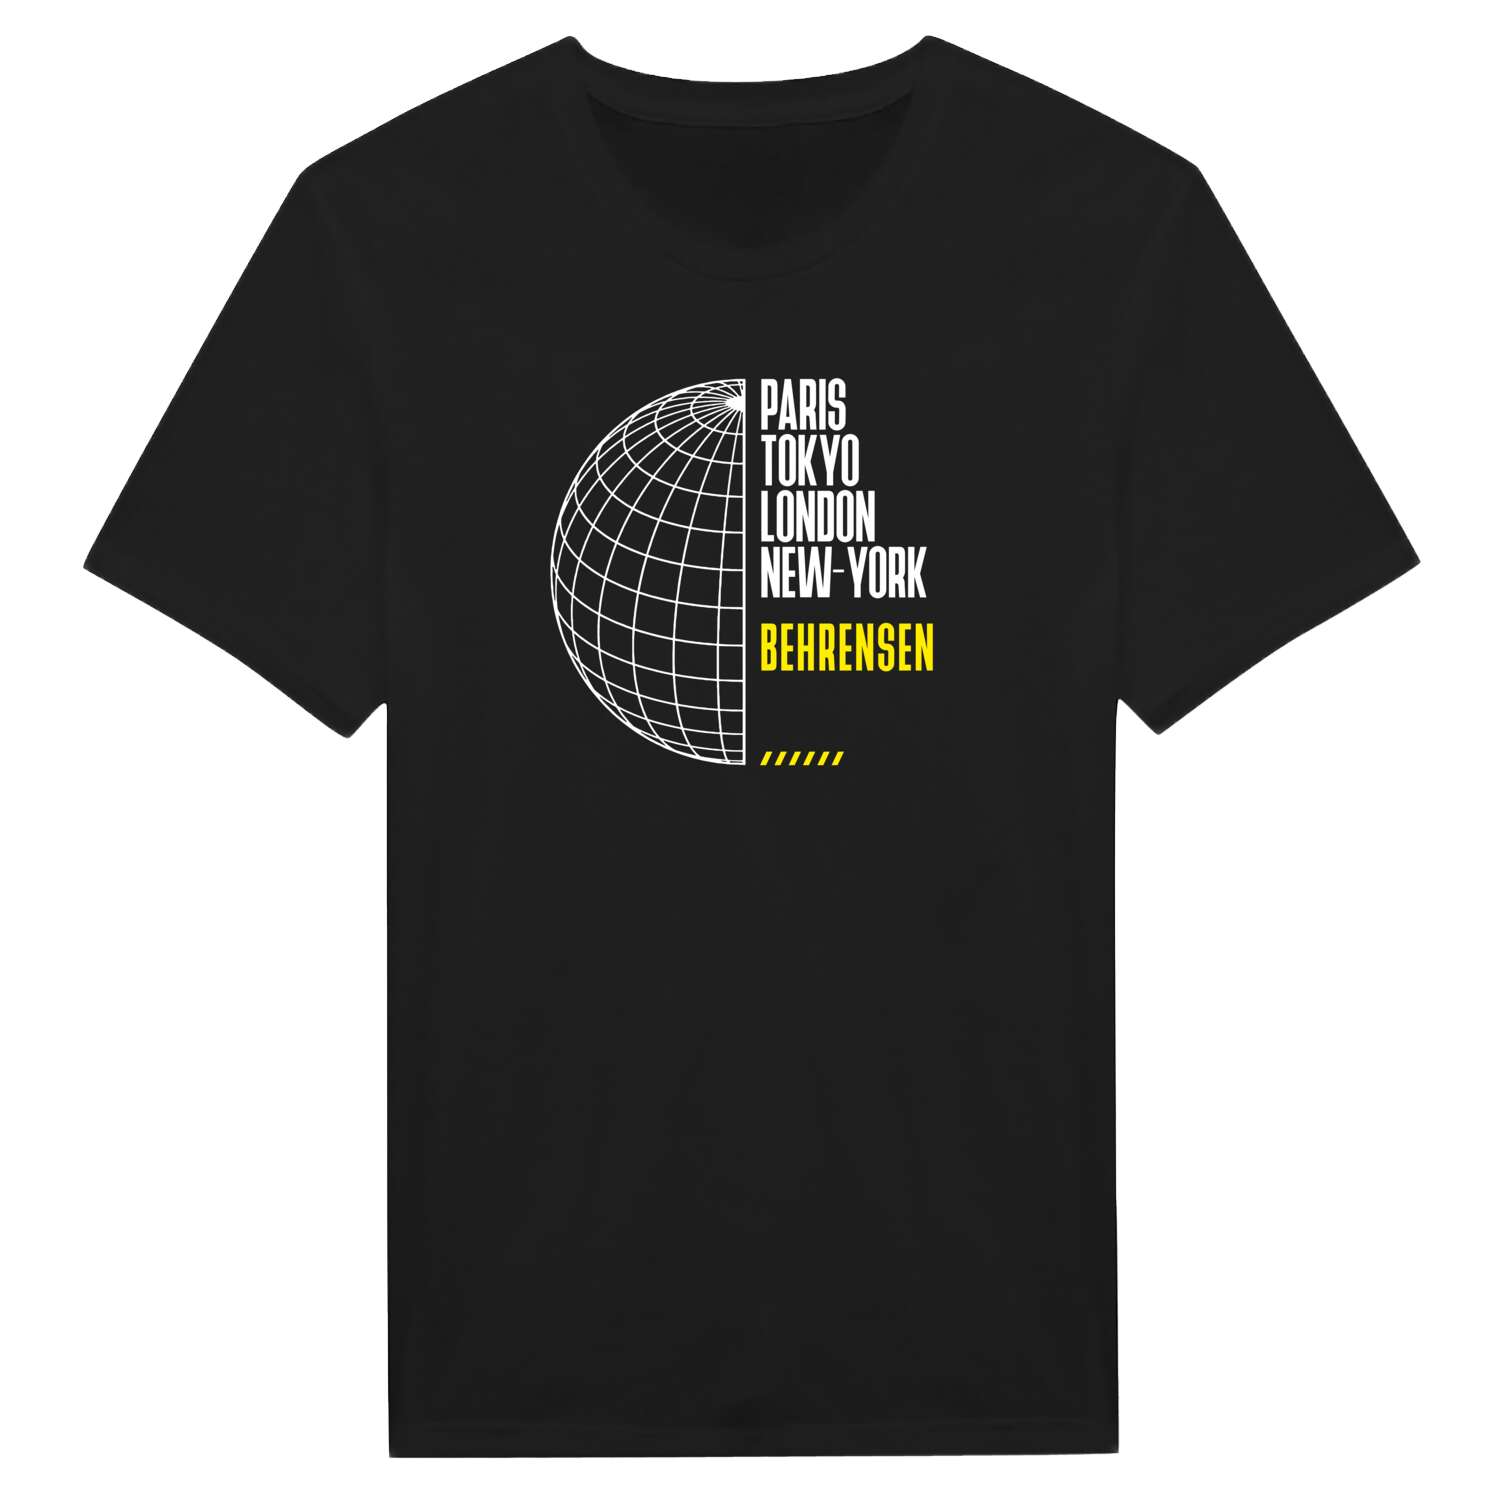 Behrensen T-Shirt »Paris Tokyo London«